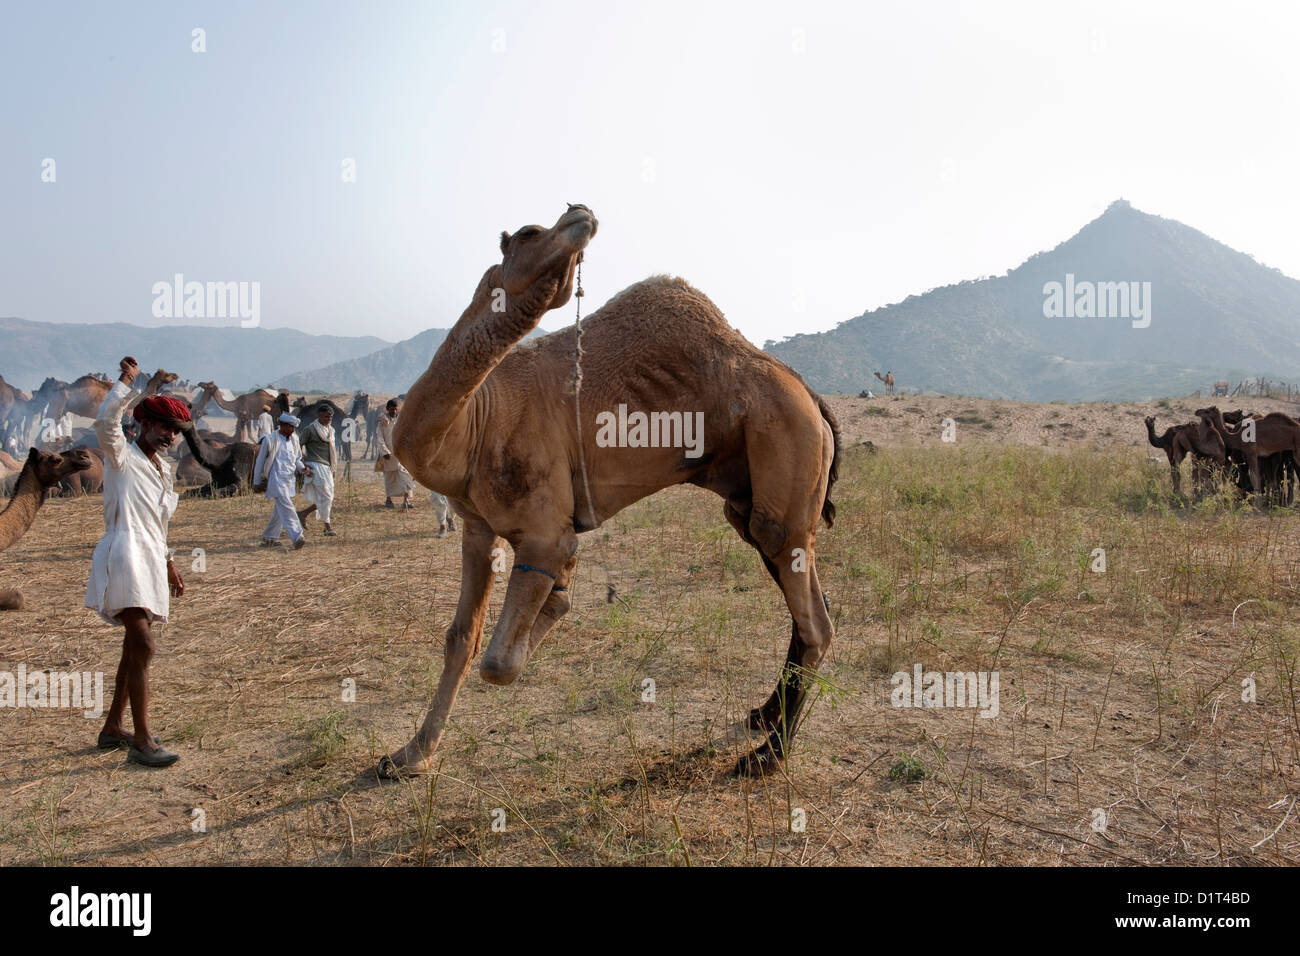 Ein Kamel Rajasthani Handel in einer roten Turbanr bildet ein Kamel in der Wüste bei der Messe in Rajasthan in Indien Pushkar Camel sitzen Stockfoto